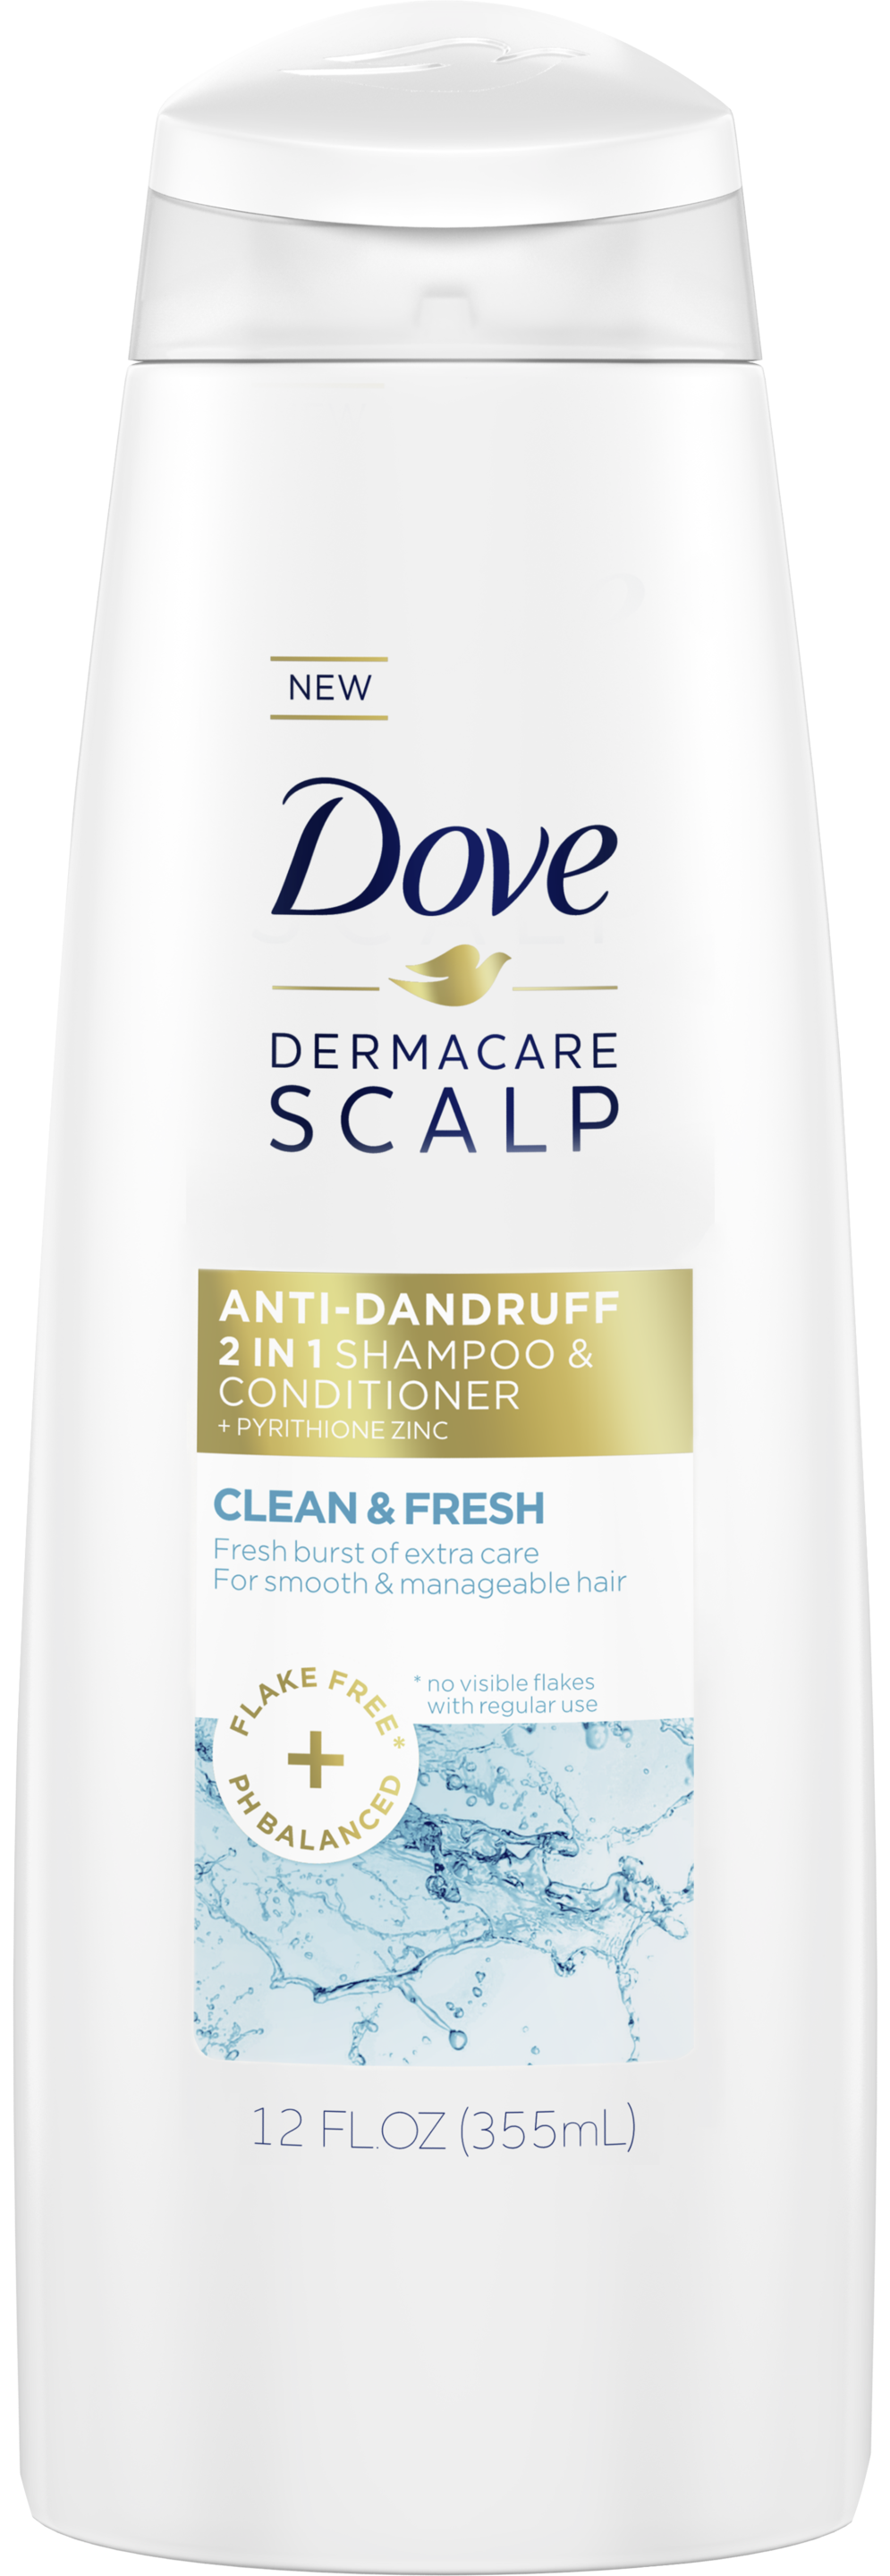 Dove Dermacare Scalp Clean & Fresh Anti-Dandruff 2 in 1 Shampoo & Conditioner 12 oz